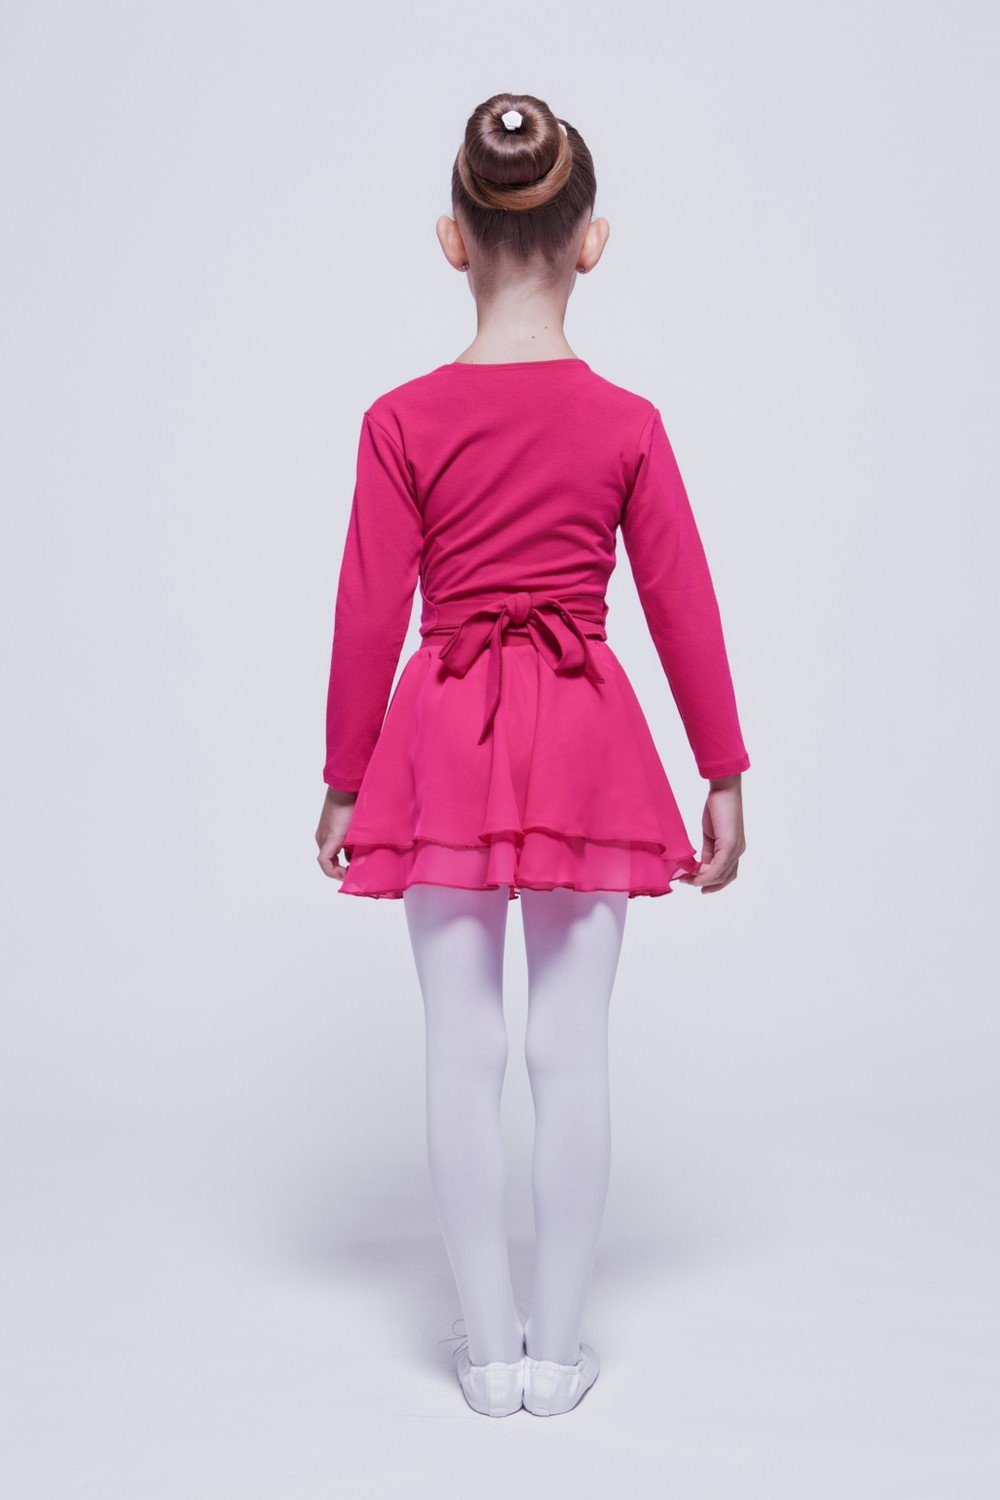 tanzmuster Sweatjacke Ballett Wickelacke für Mädchen pink weicher aus Baumwolle Ballettjacke Mandy